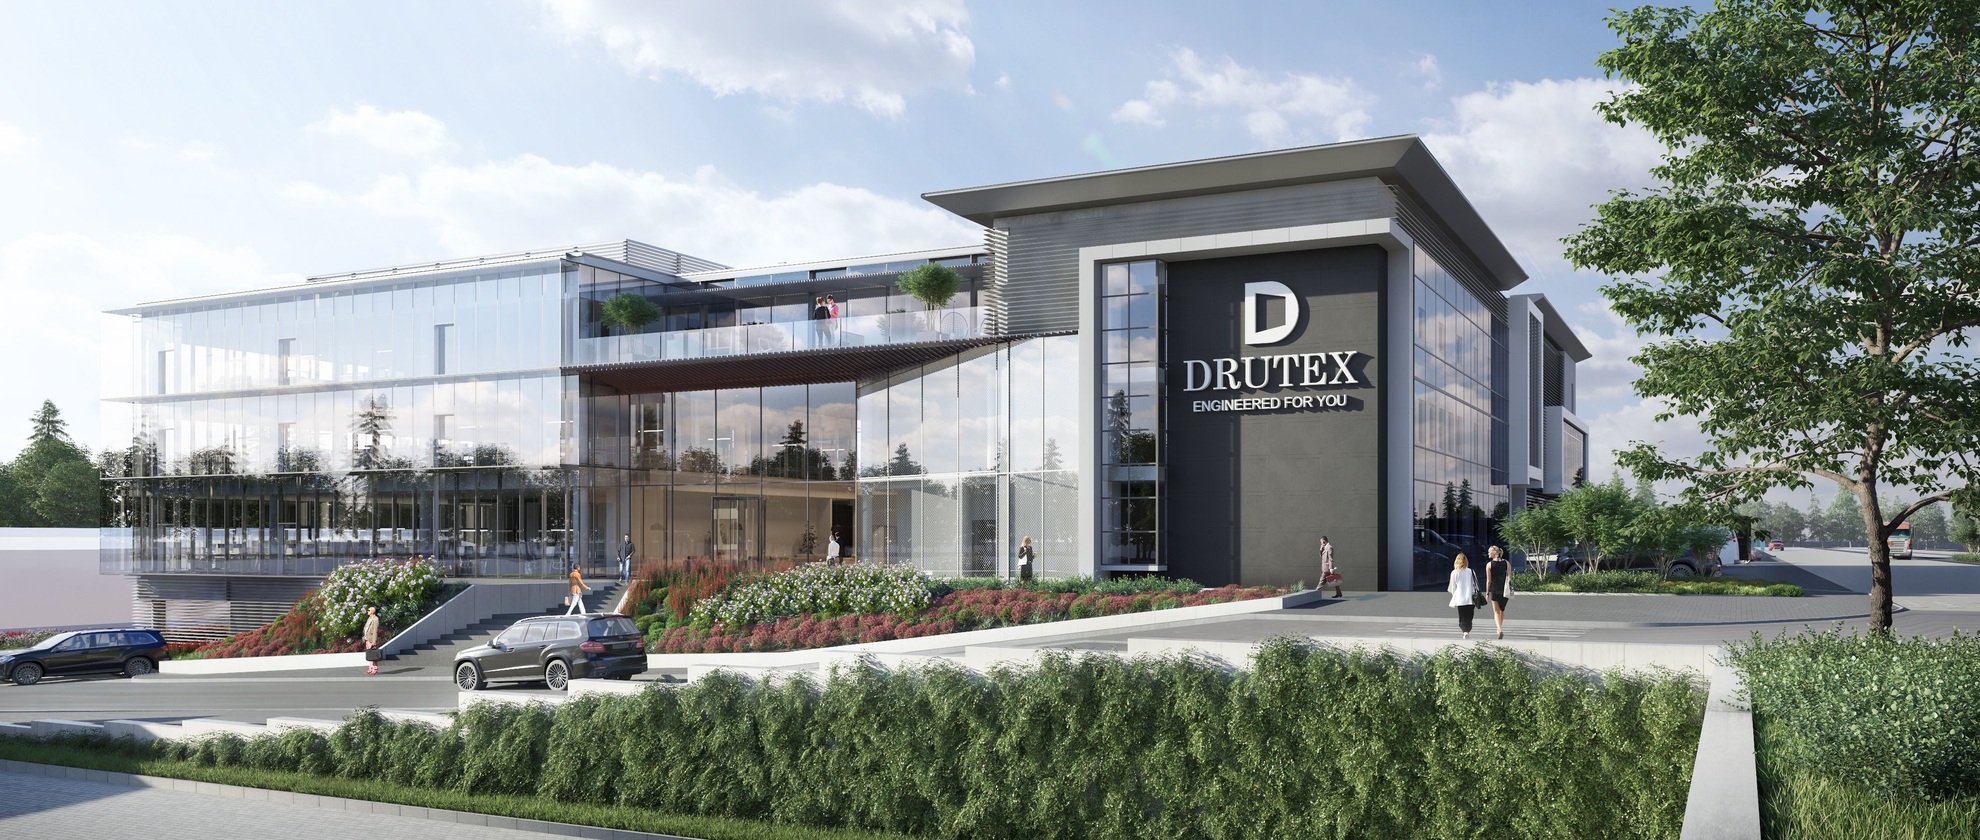 Spoločnosť Drutex zahájila výstavbu jednej z najmodernejších kancelárskych budov v Poľsku